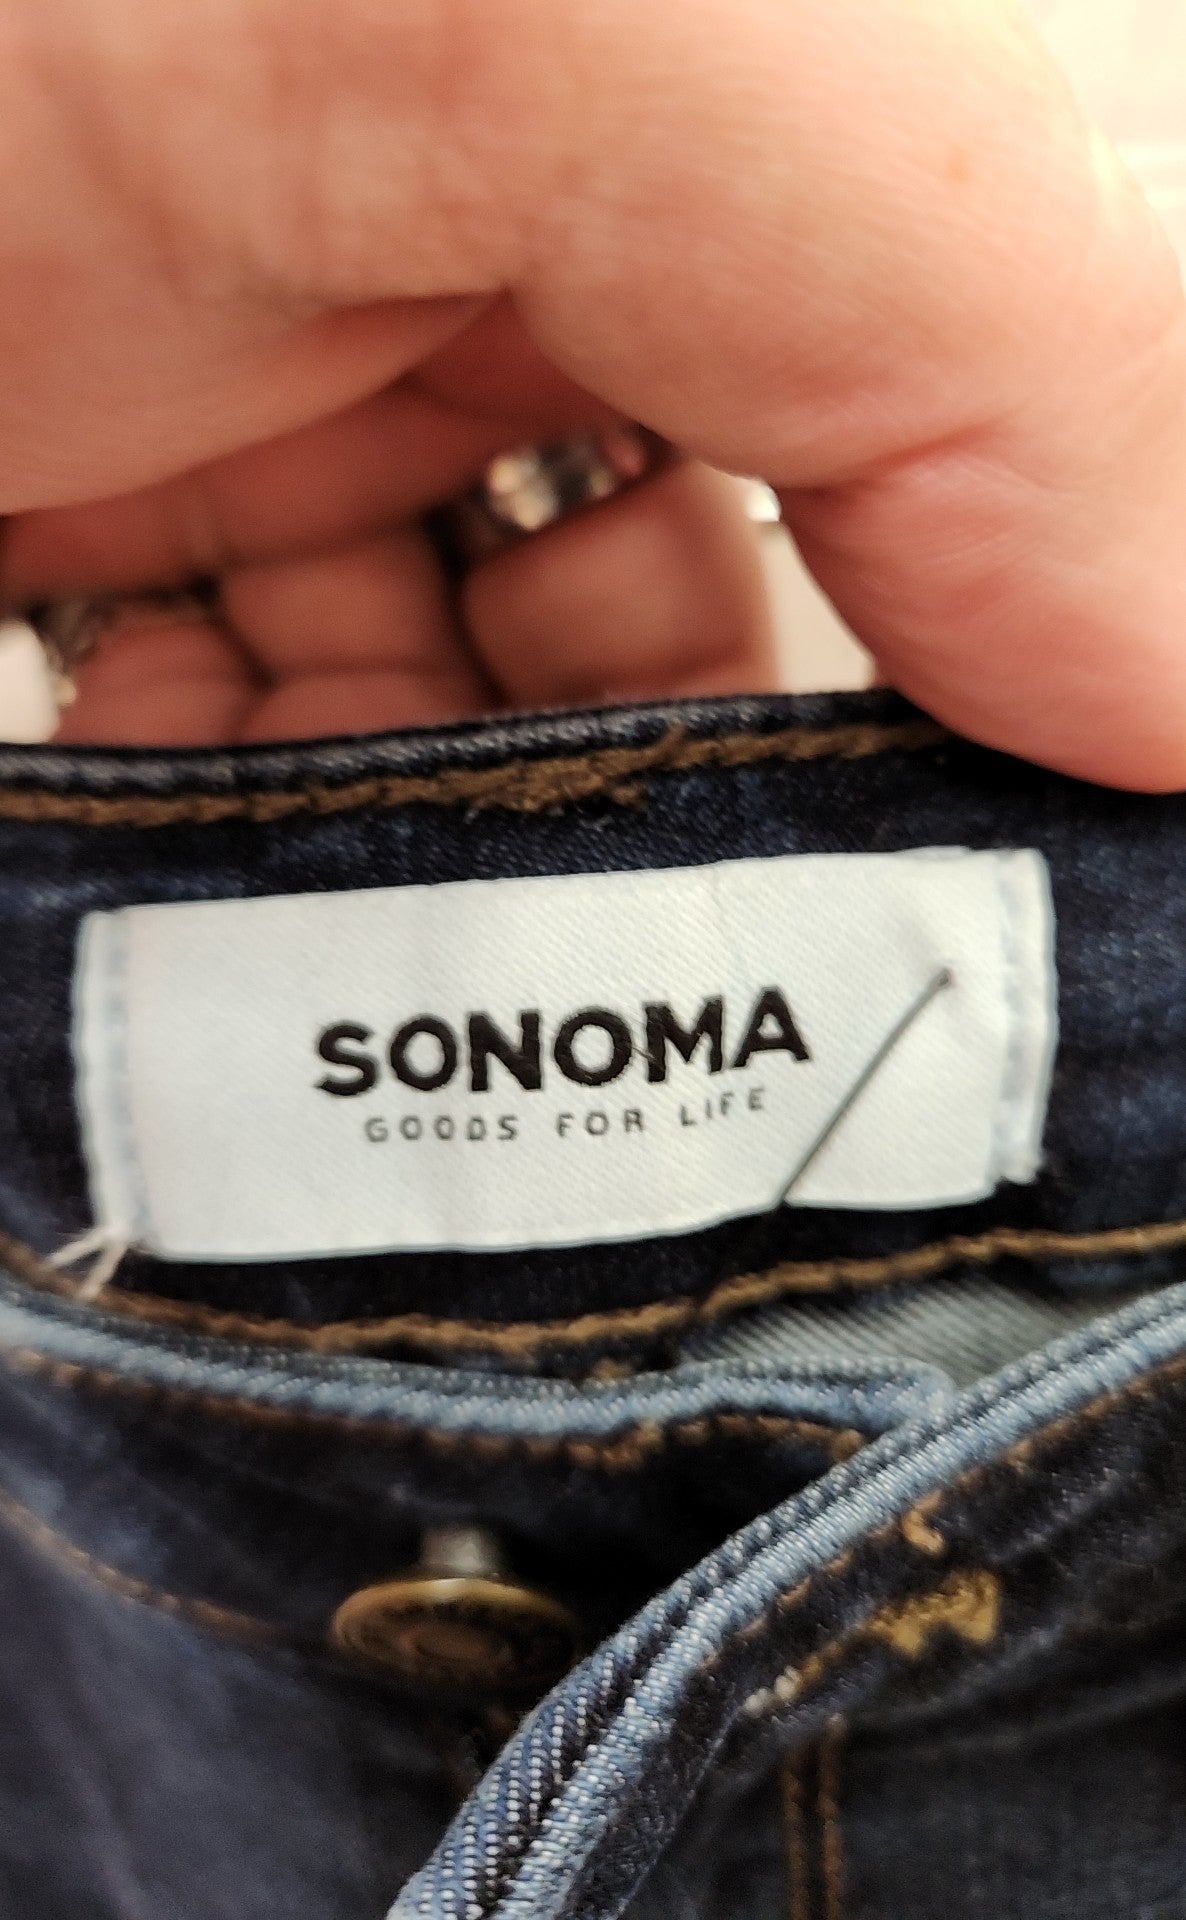 Sonoma Women's Size 8 Petite Blue Capris